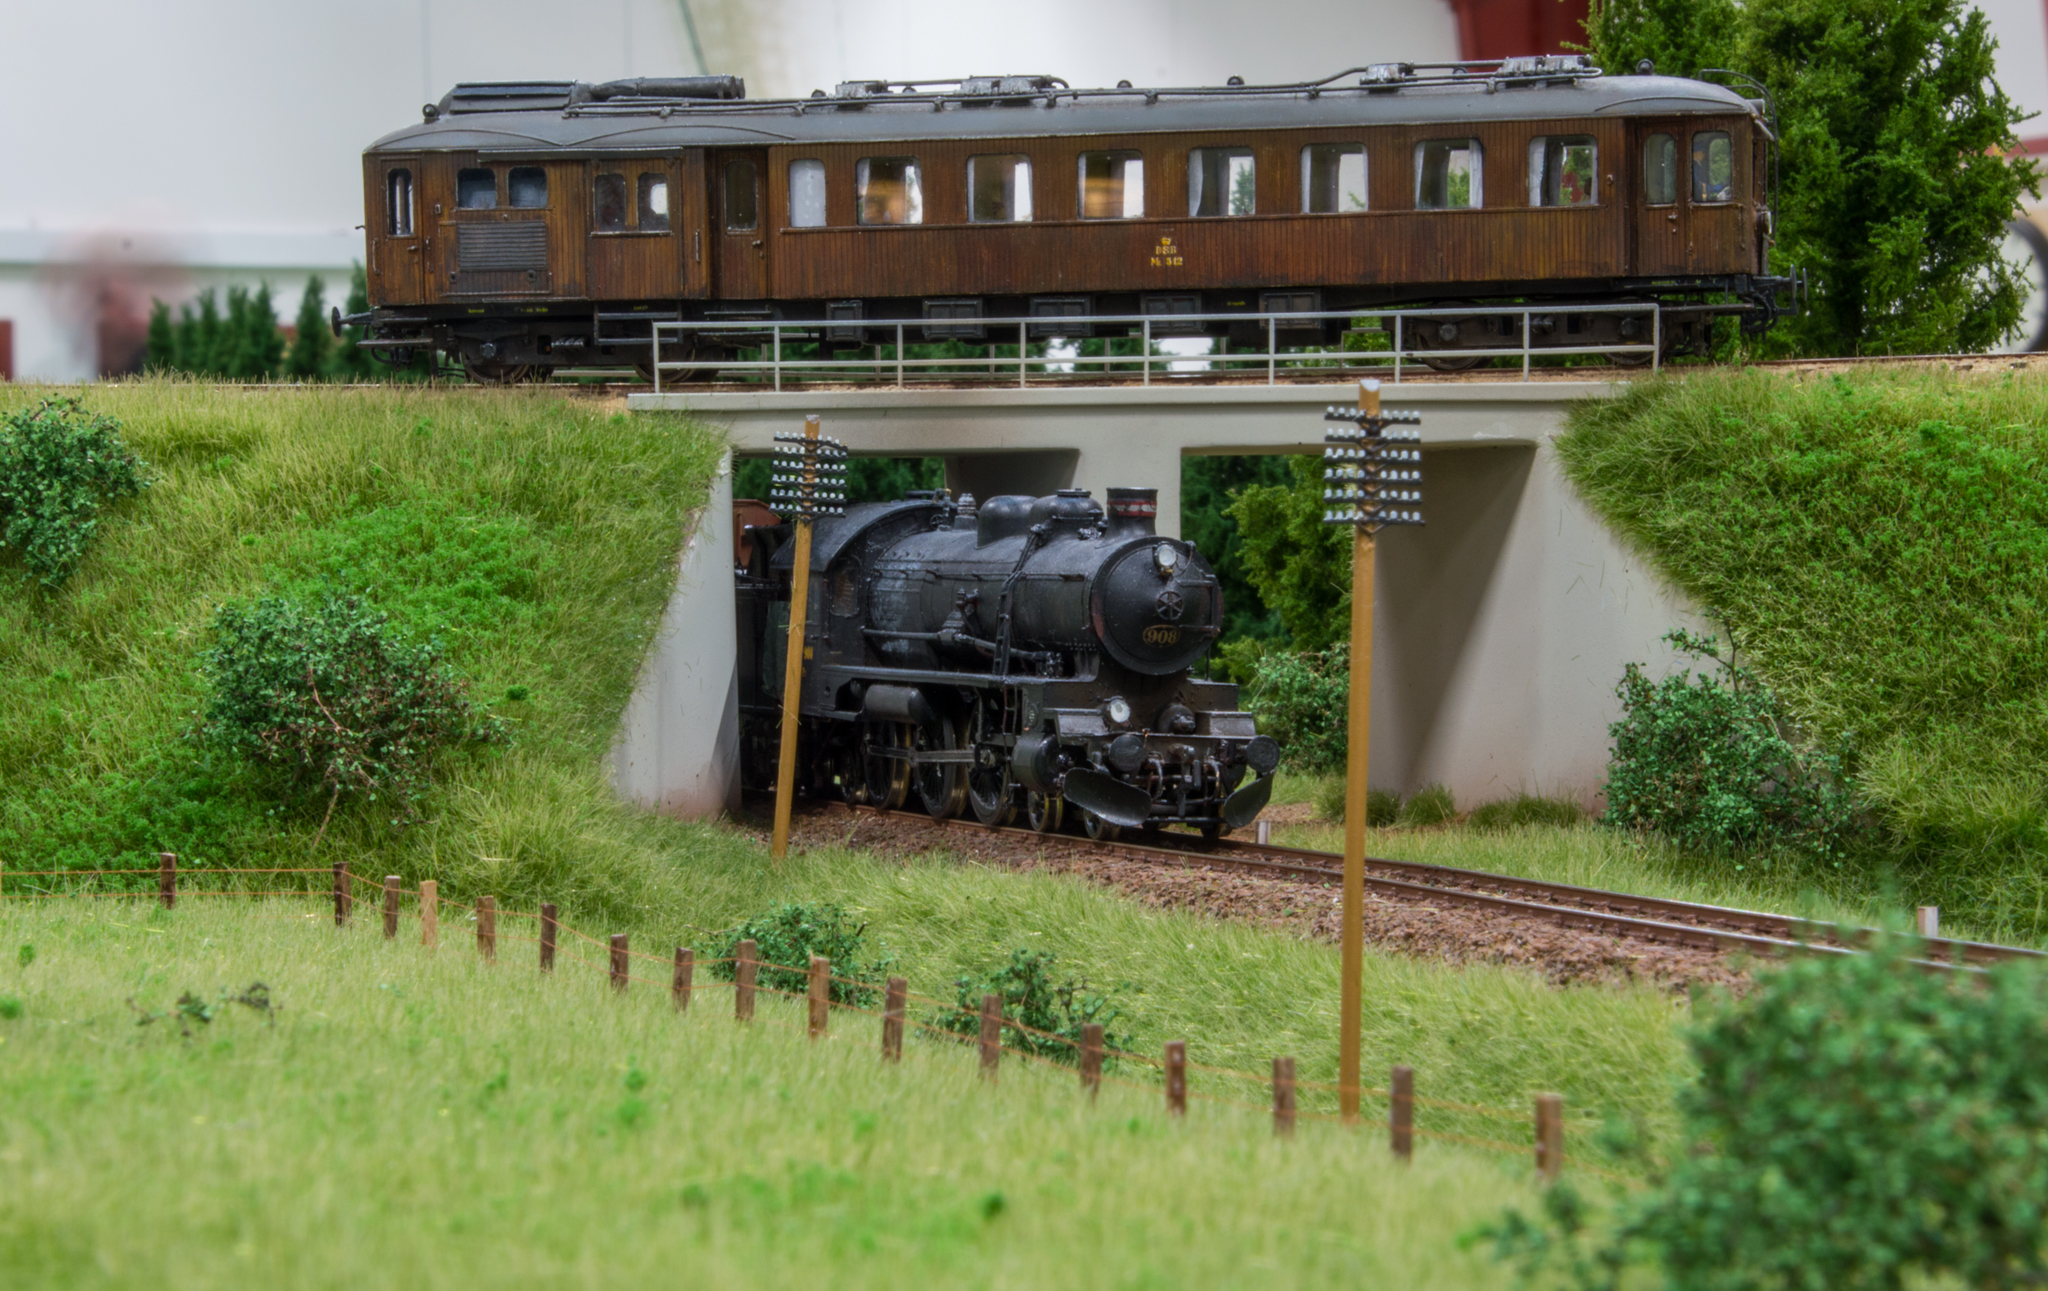 Krydsning mellem Troldhedebanen og Grindsted-Brande-banen på DSB sidebanen